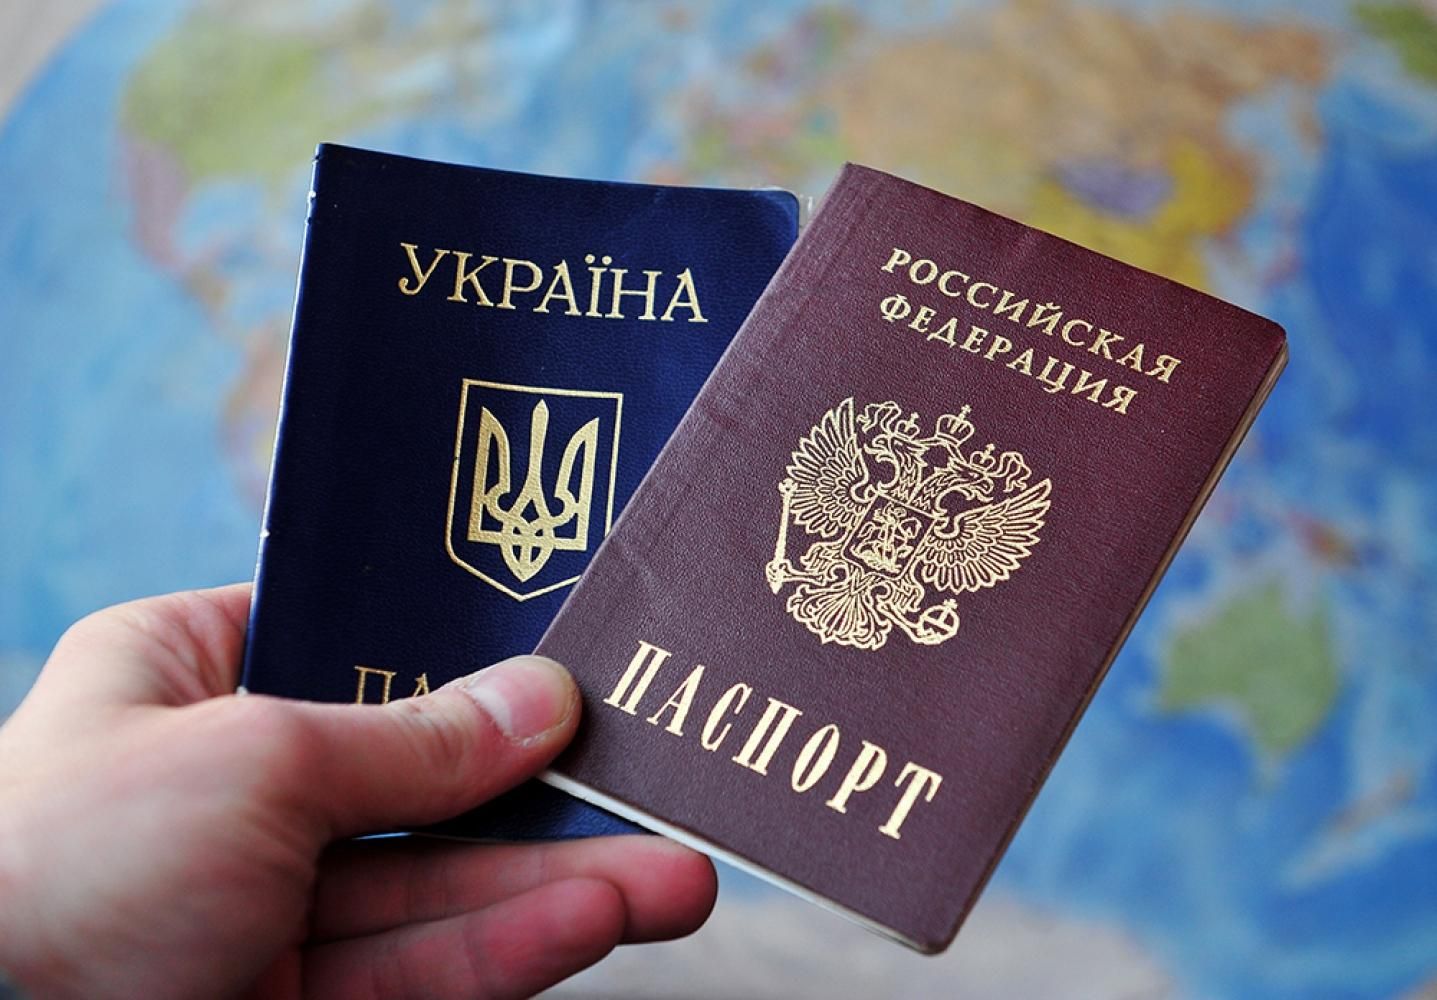 Как жители неподконтрольных территорий относятся к выдаче российских паспортов